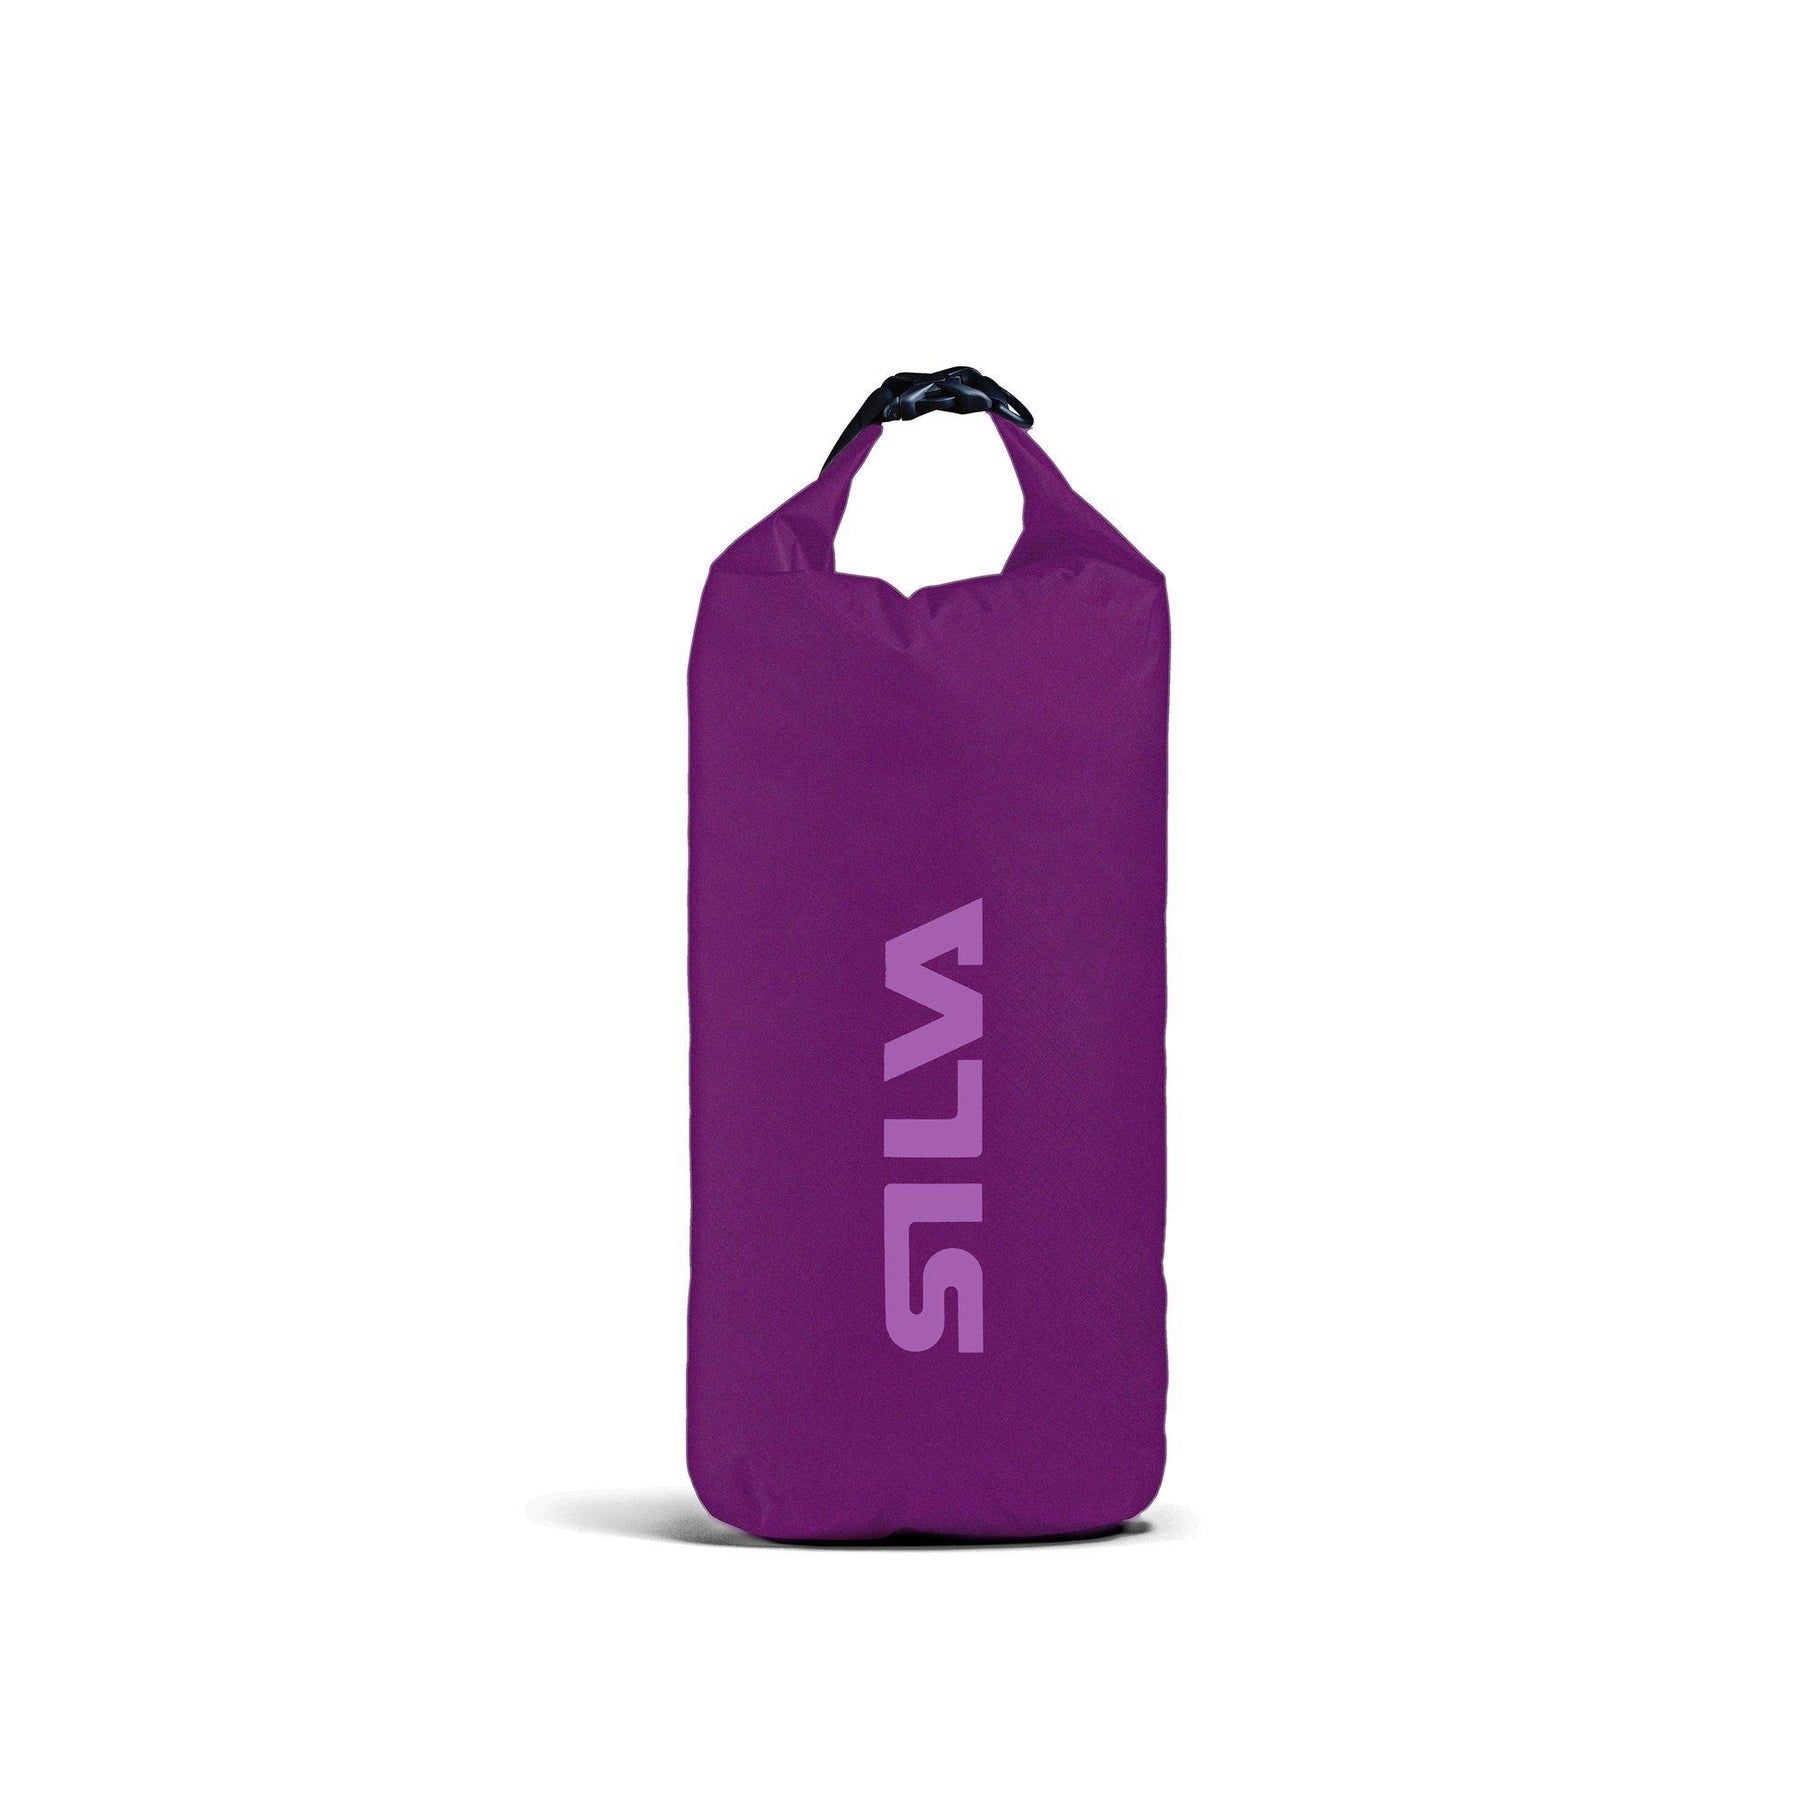 Silva 70D Dry Bag, 6L